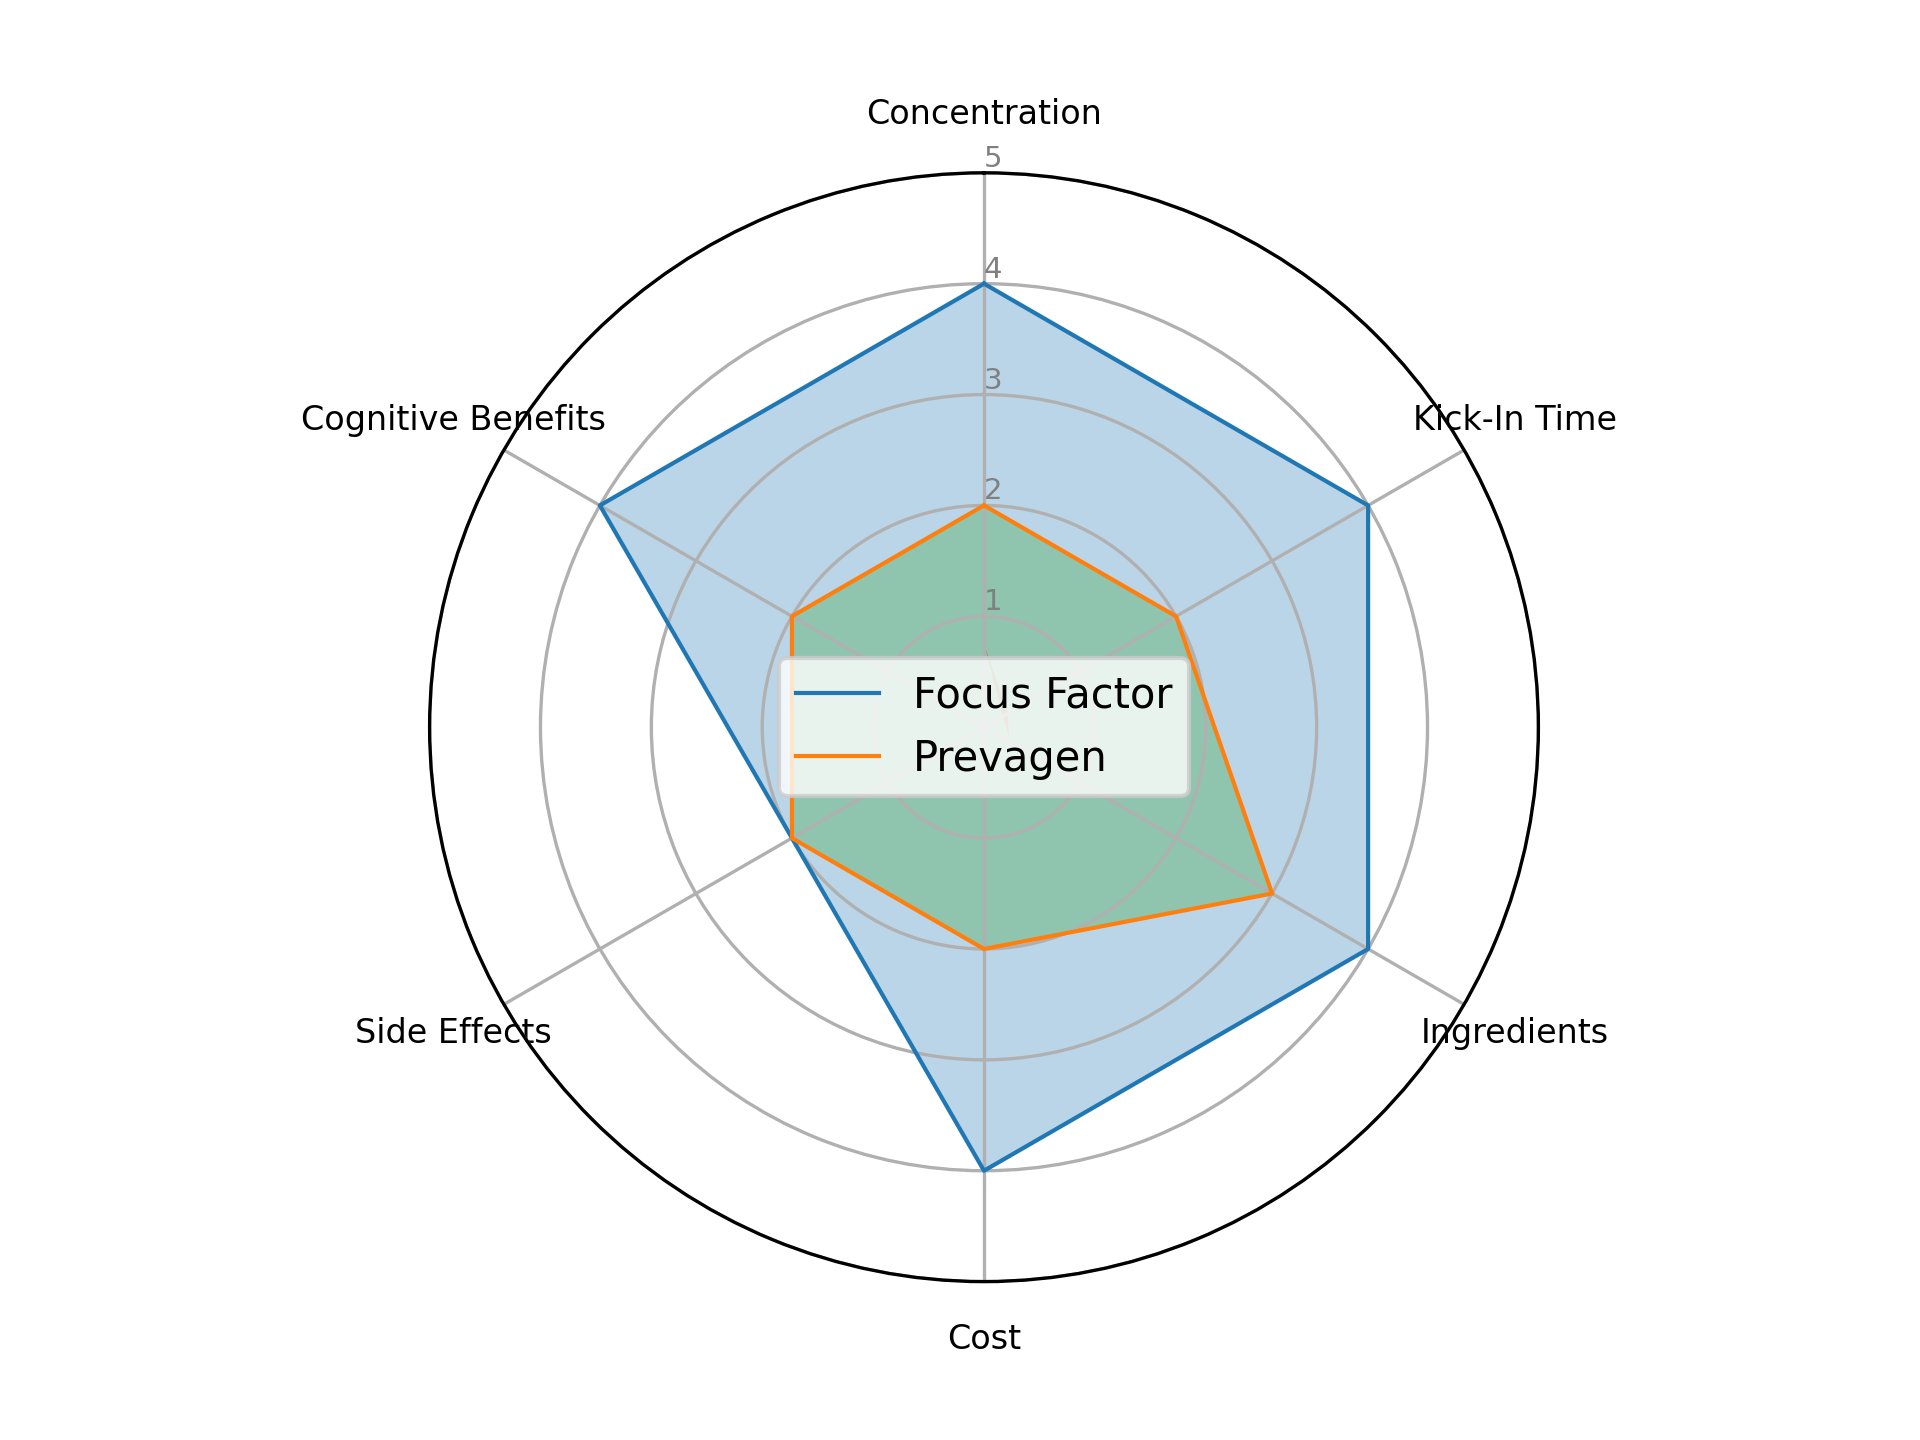 spider diagram comparing Focus Factor and Prevagen